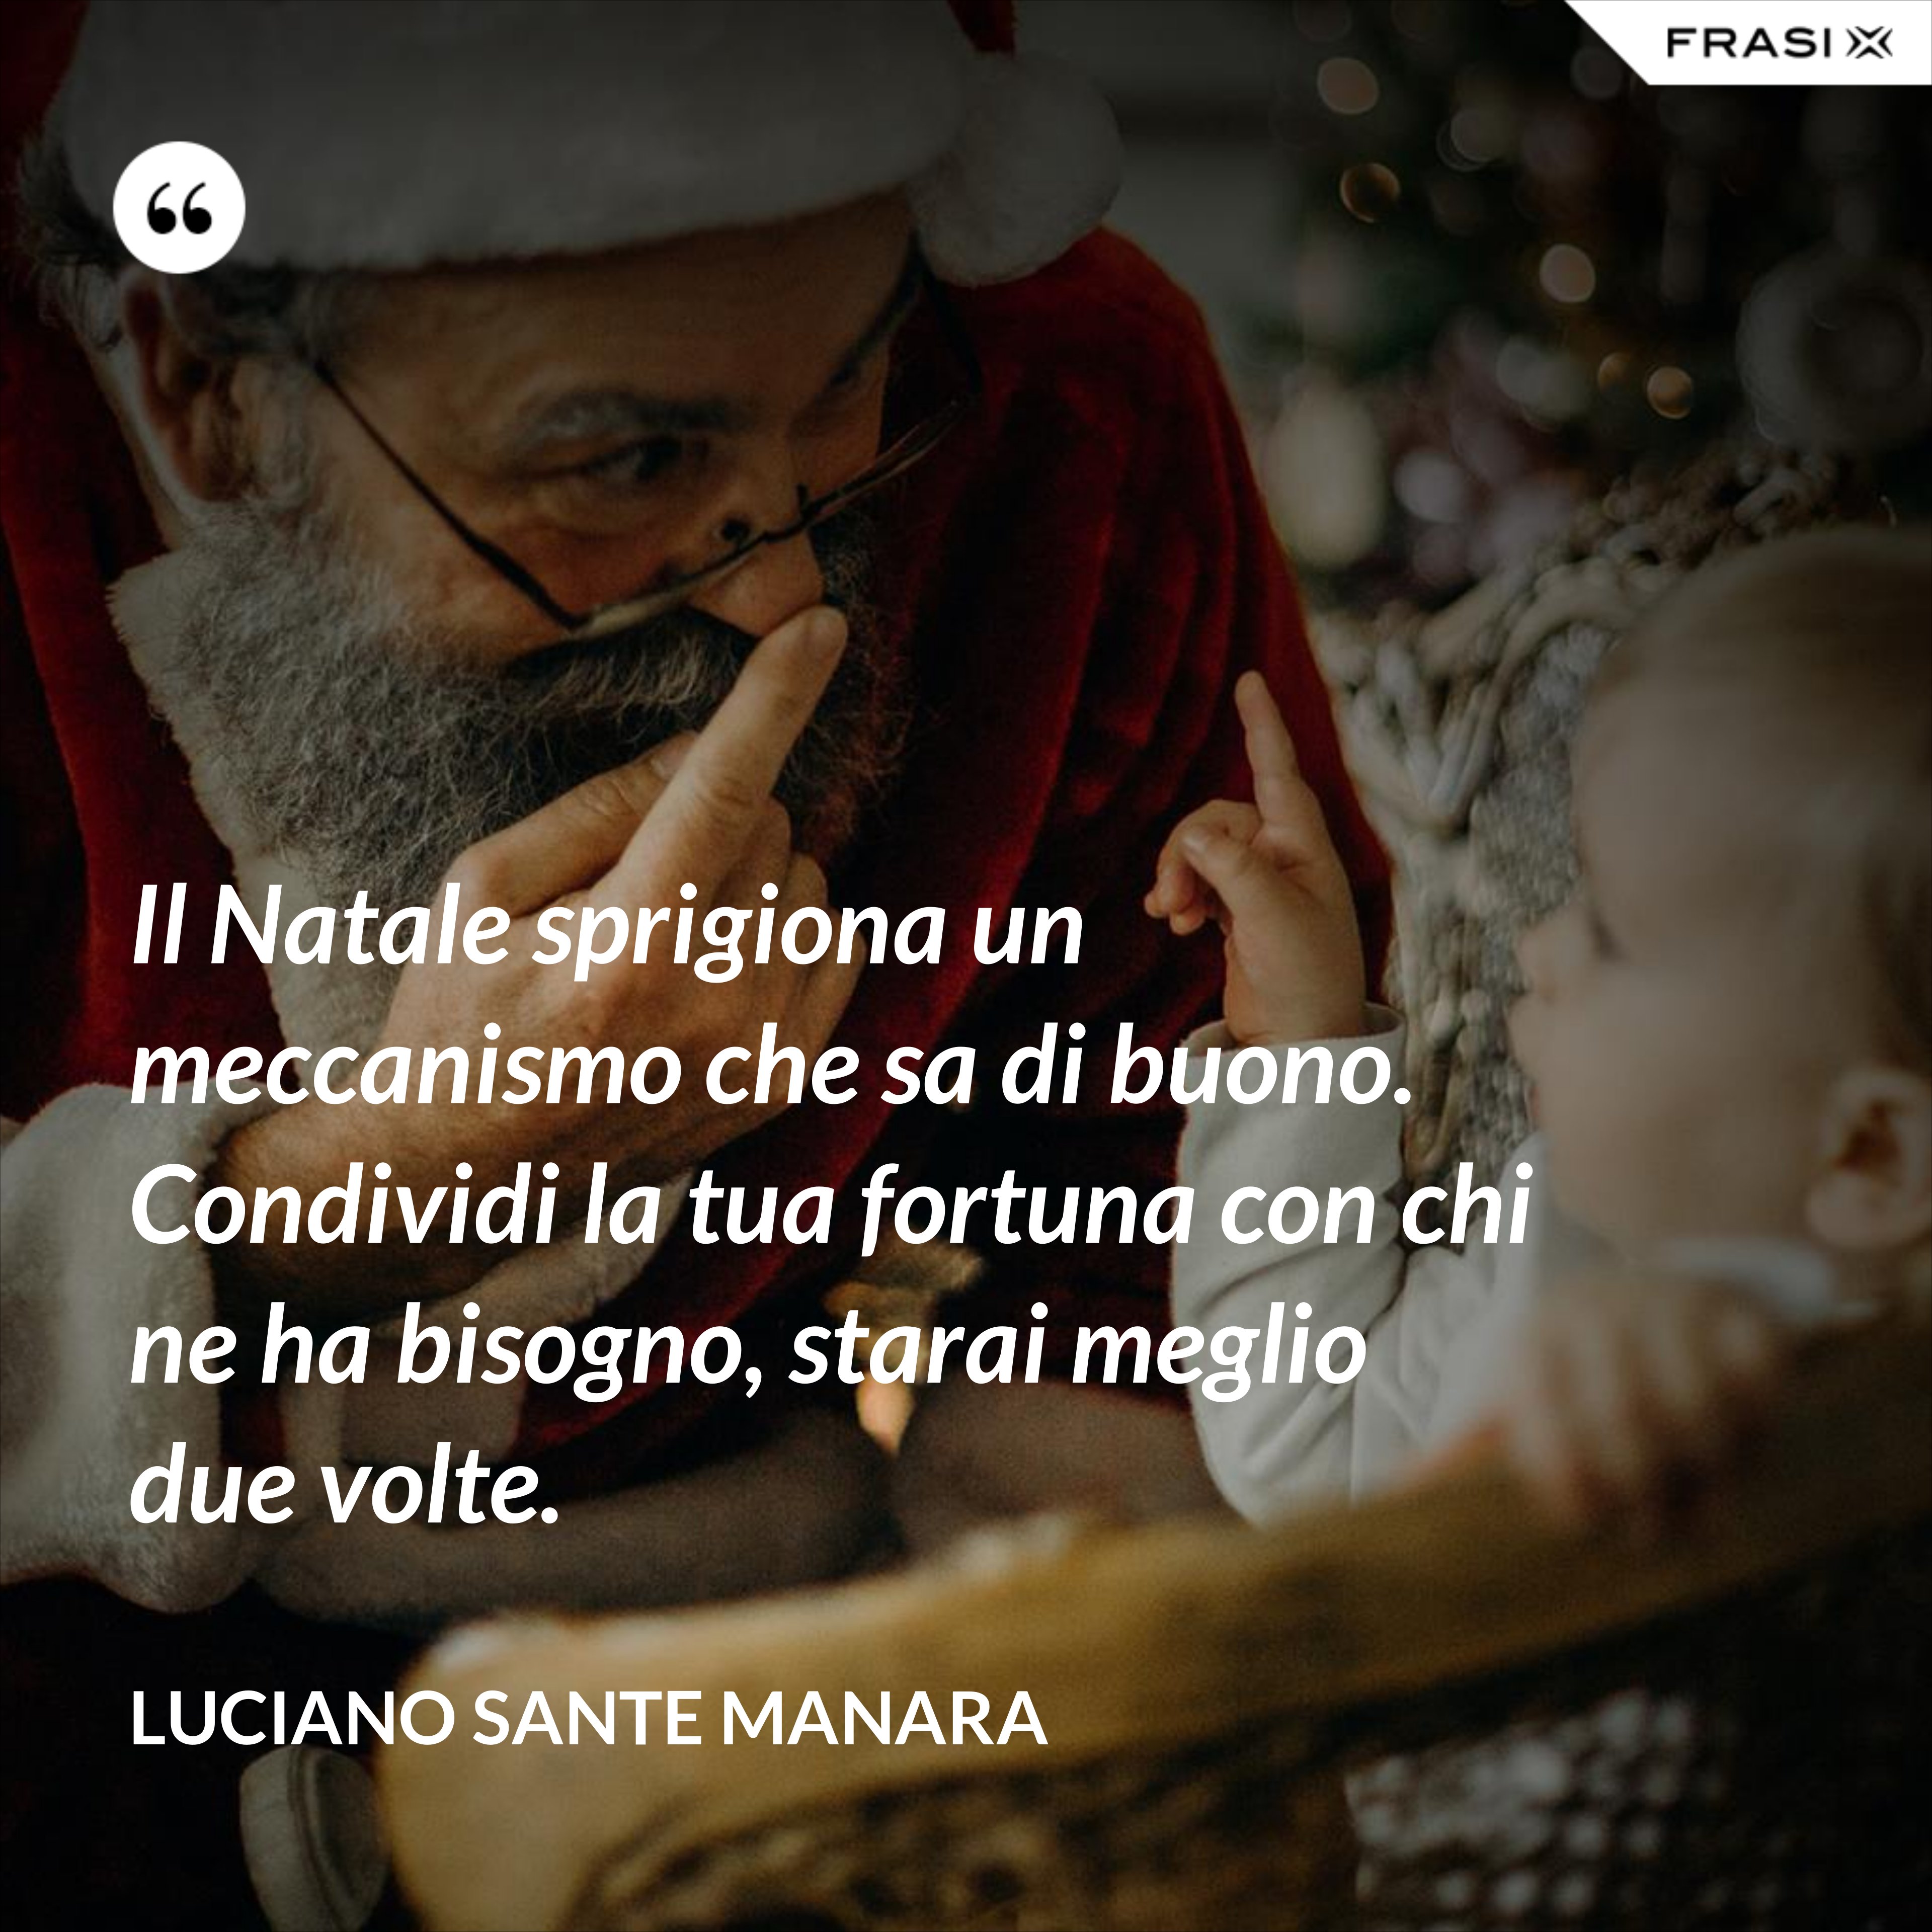 Il Natale sprigiona un meccanismo che sa di buono. Condividi la tua fortuna con chi ne ha bisogno, starai meglio due volte. - Luciano Sante Manara